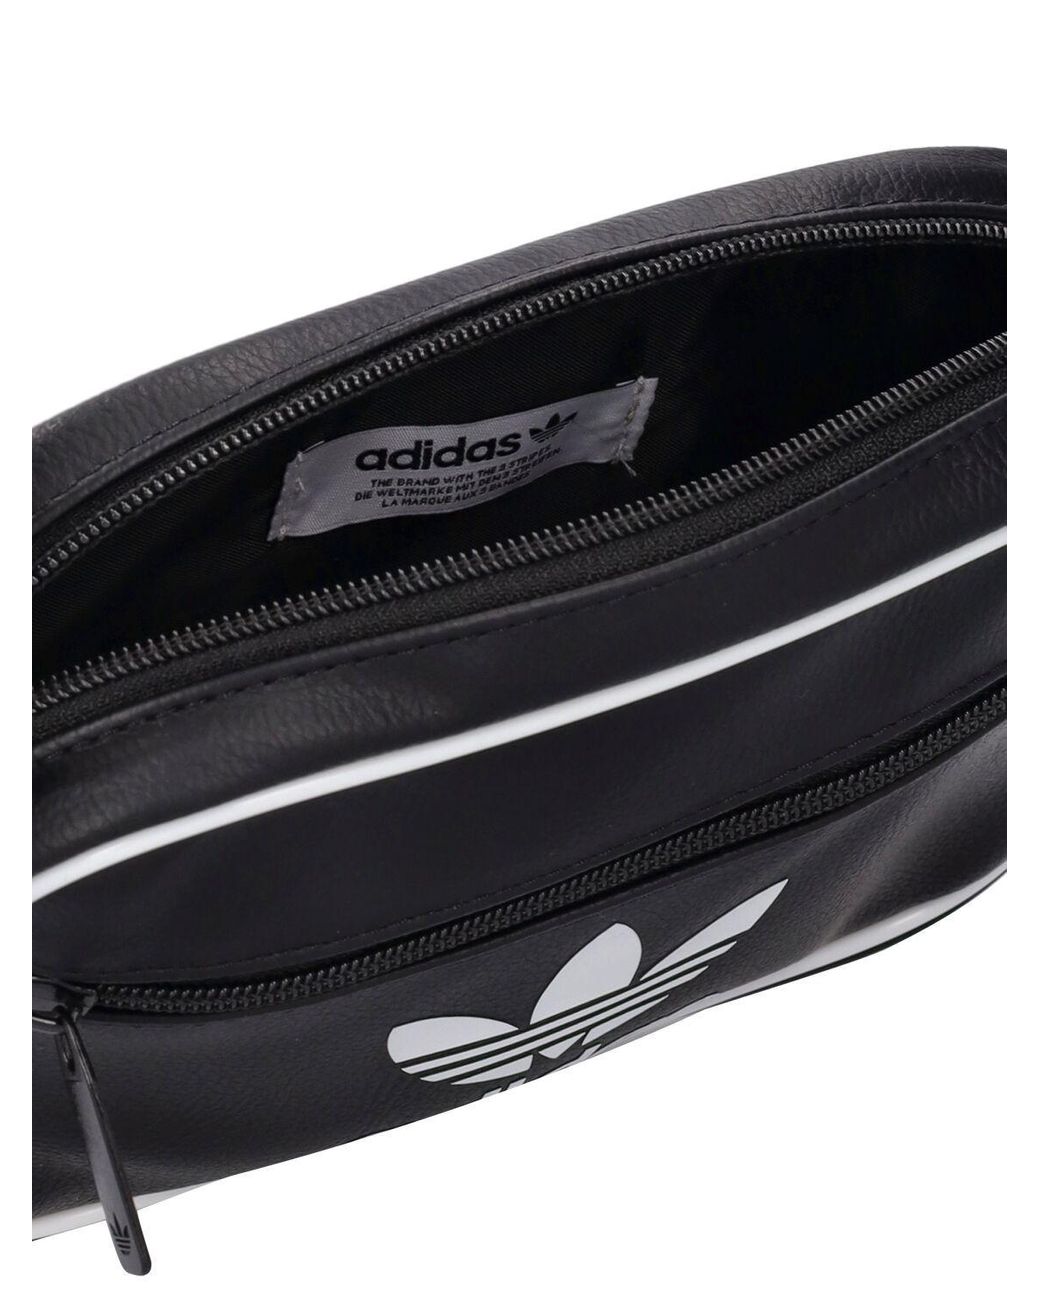 adidas Originals Ac Mini Airline Bag in Black | Lyst